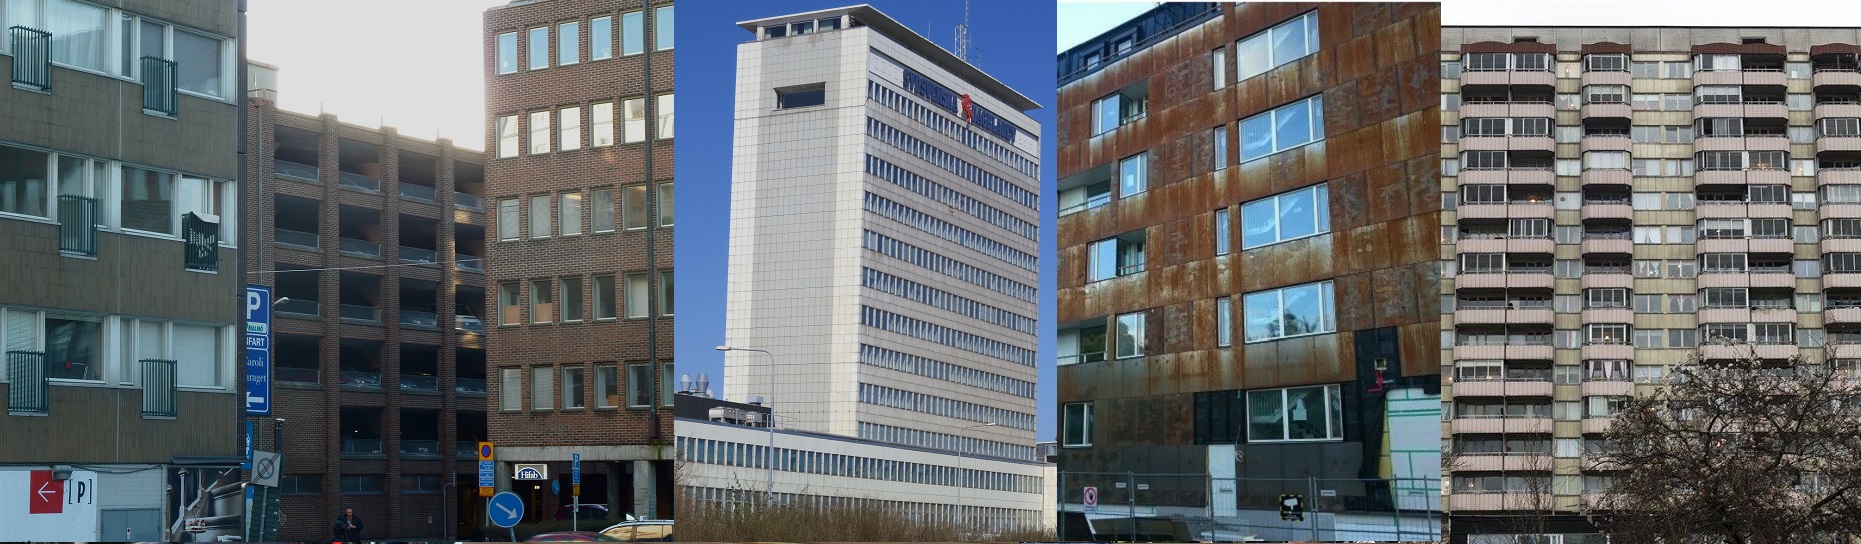 Finns Sveriges fulaste byggnad i Malmö?